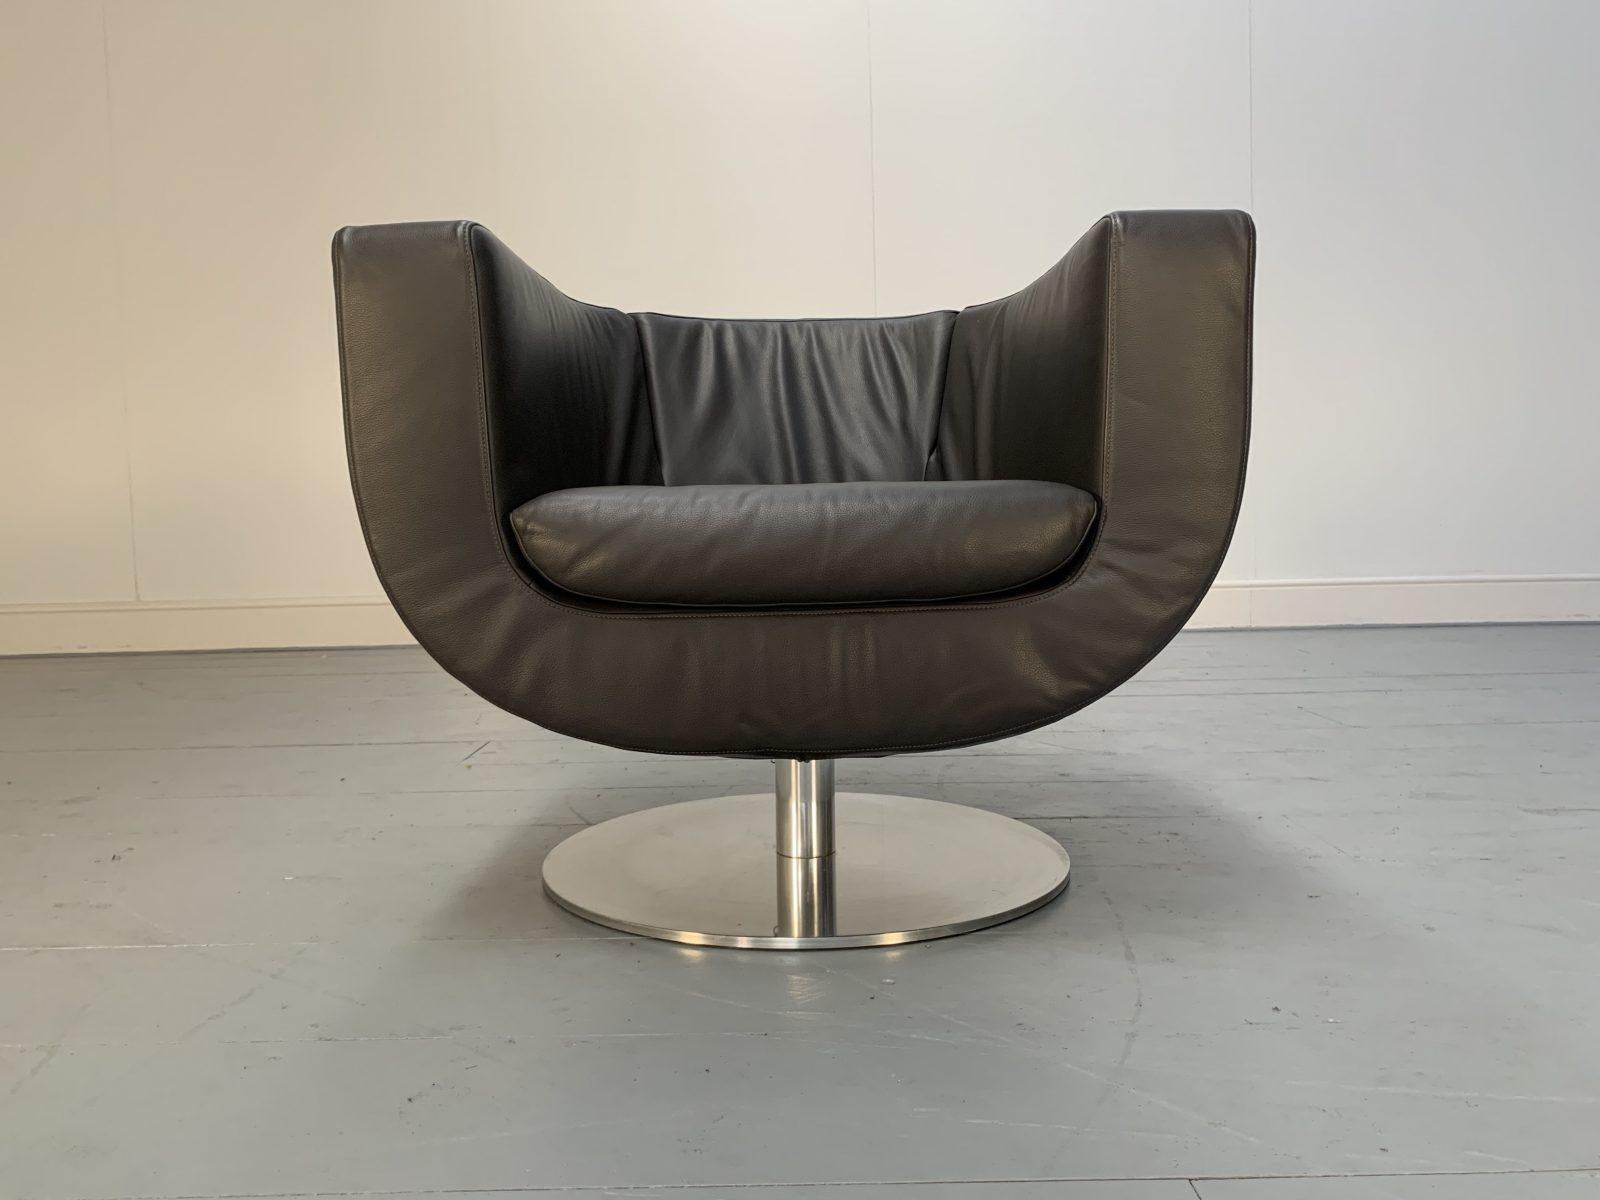 Bonjour les amis, et bienvenue à une nouvelle offre incontournable de Lord Browns Furniture, la première source de canapés et de chaises de qualité au Royaume-Uni.

L'offre porte sur un superbe fauteuil 